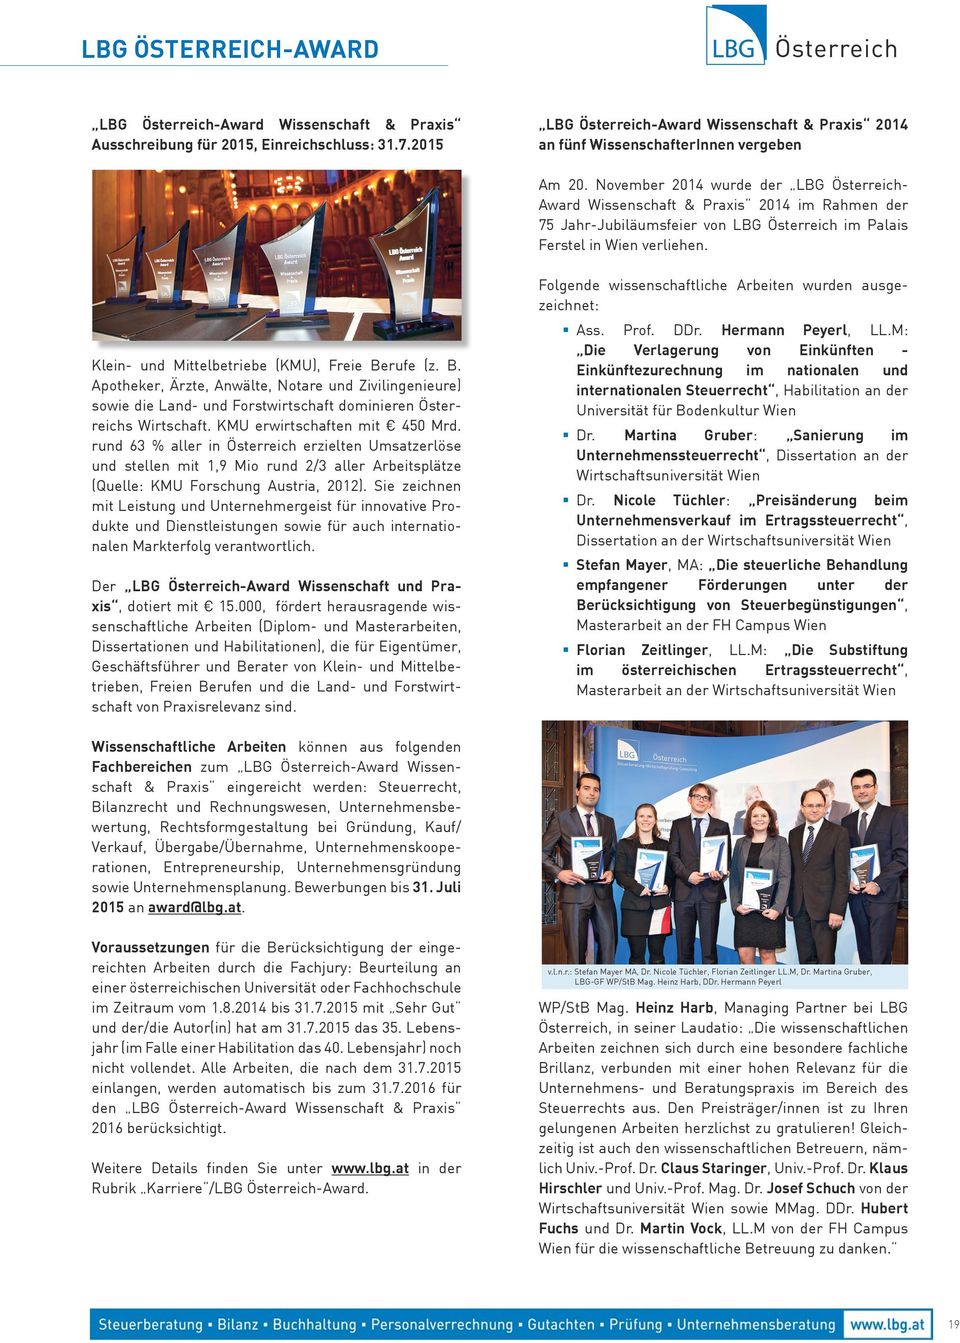 November 2014 wurde der LBG Österreich- Award Wissenschaft & Praxis 2014 im Rahmen der 75 Jahr-Jubiläumsfeier von LBG Österreich im Palais Ferstel in Wien verliehen.